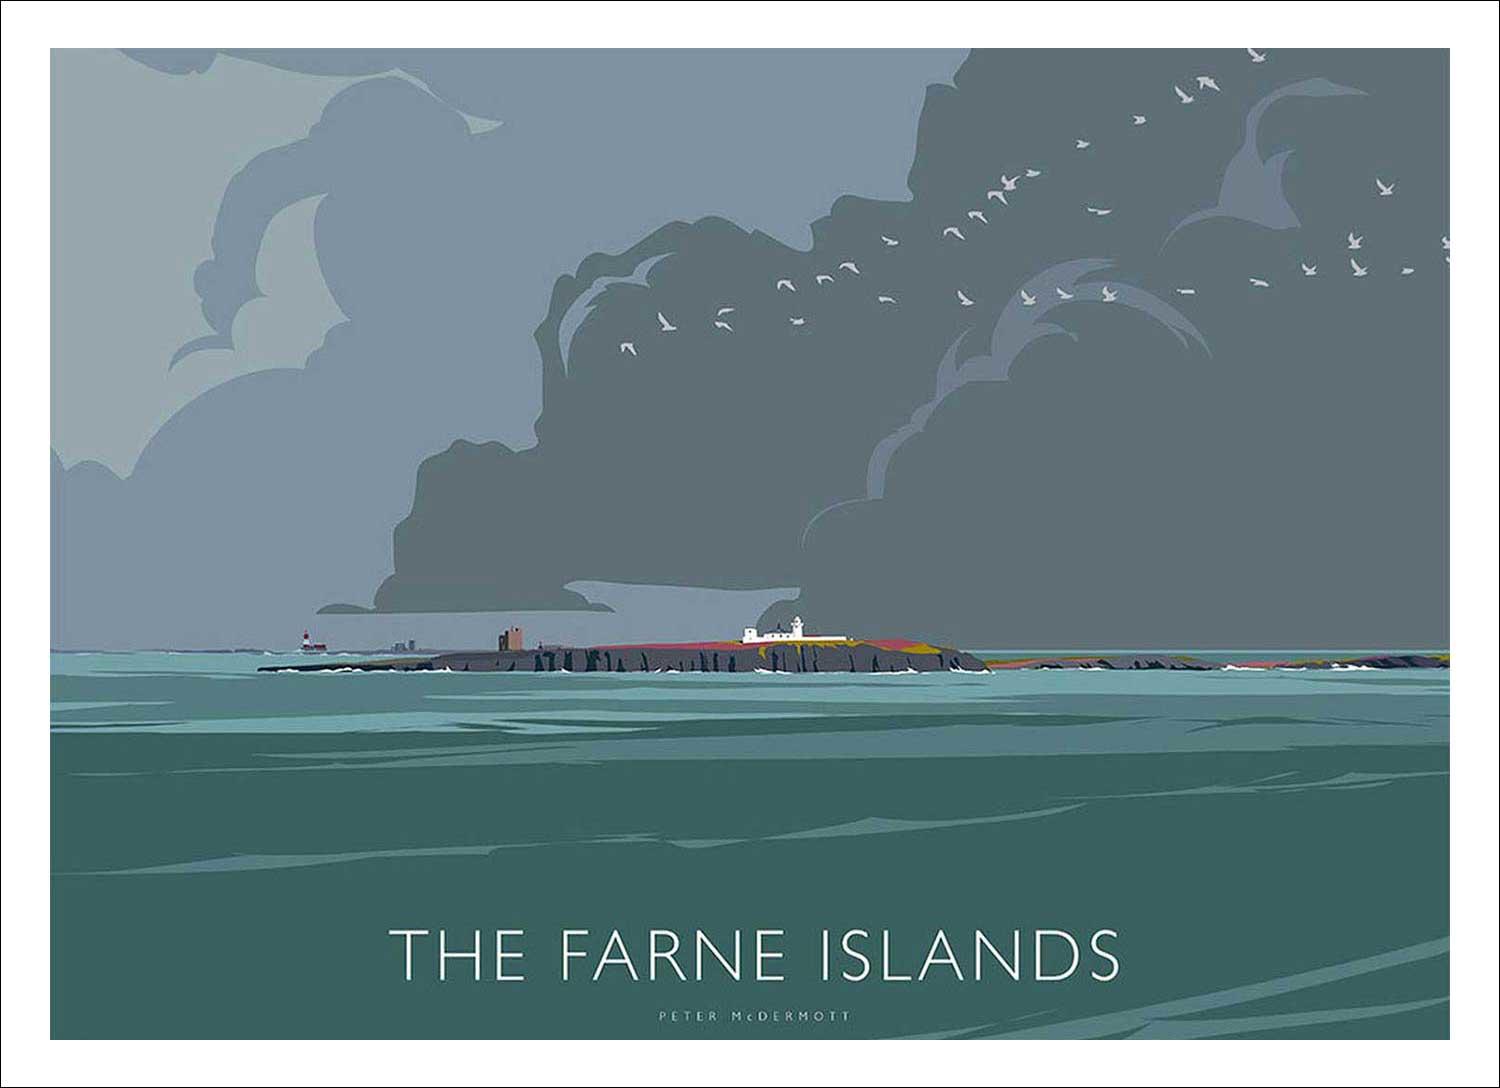 The Farne Islands Art Print from an original illustration by artist Peter McDermott